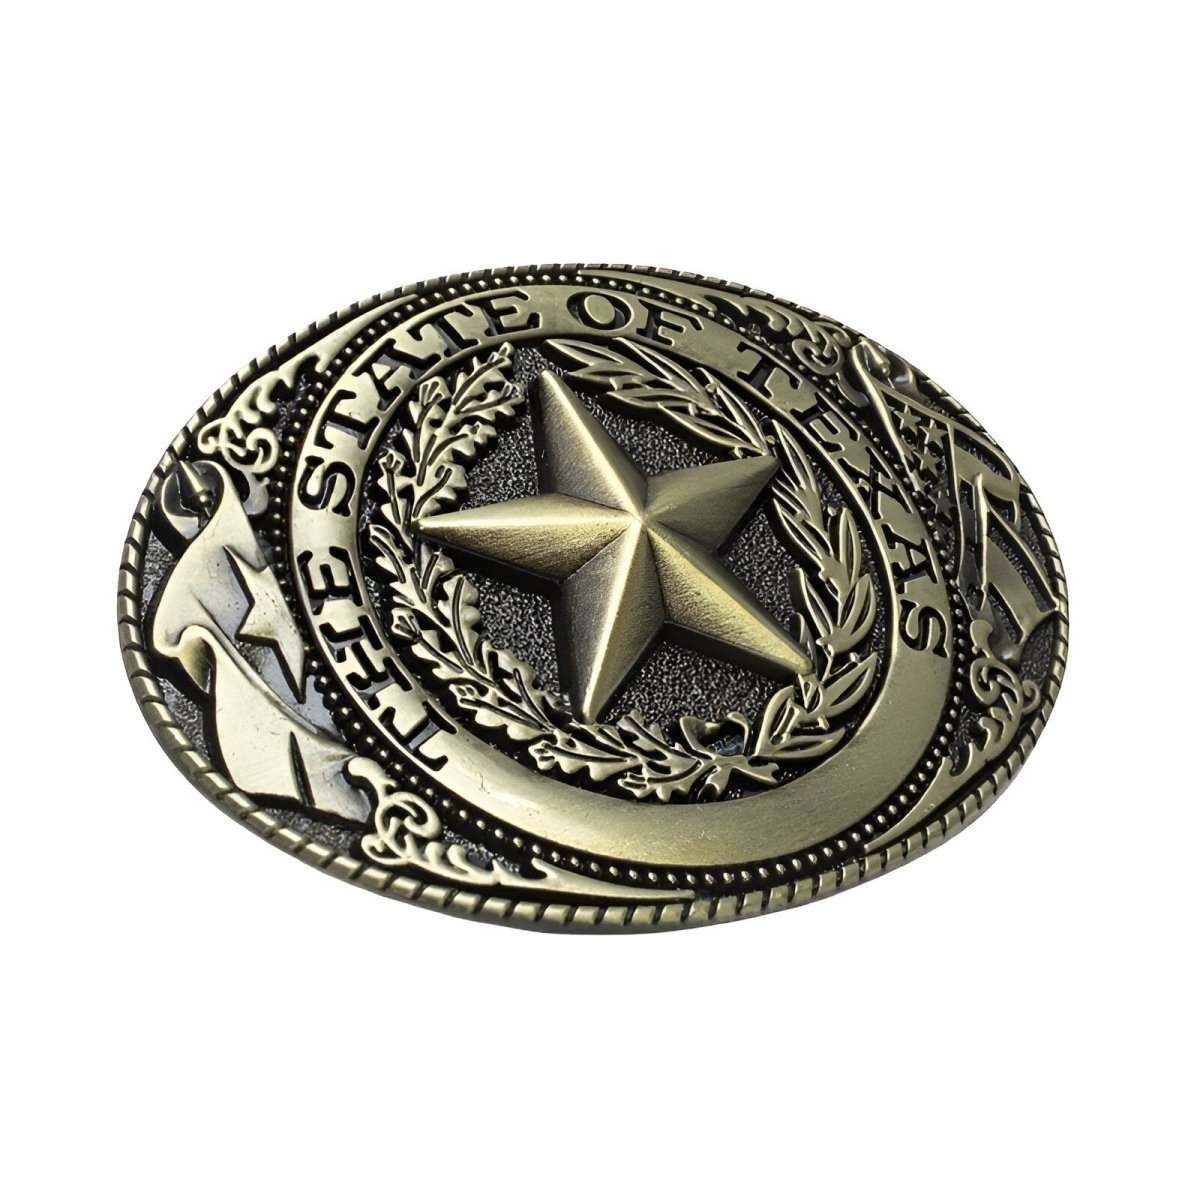 Boucle de ceinture Américaine, "The State of Texas", modèle Matthew - La Boutique de la Ceinture